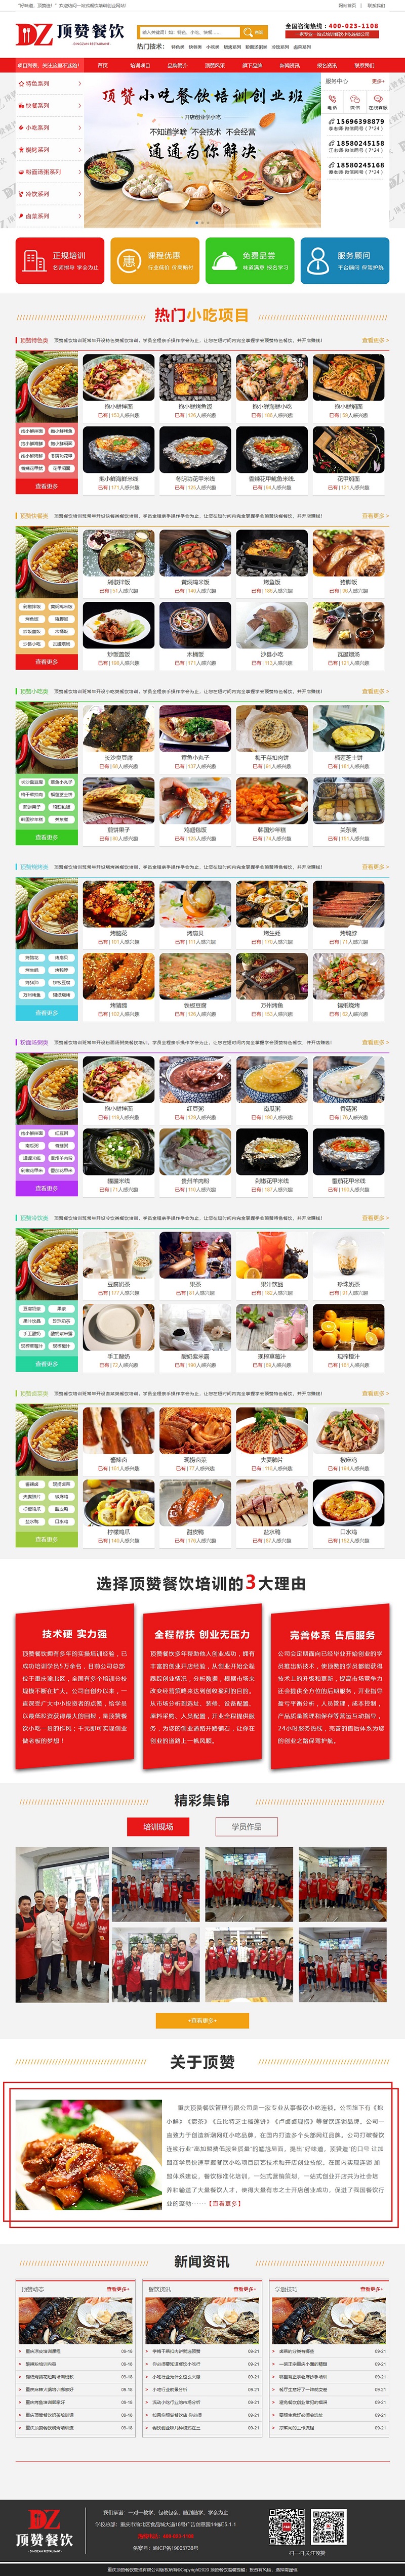 重庆顶赞餐饮管理有限公司网站建设案例